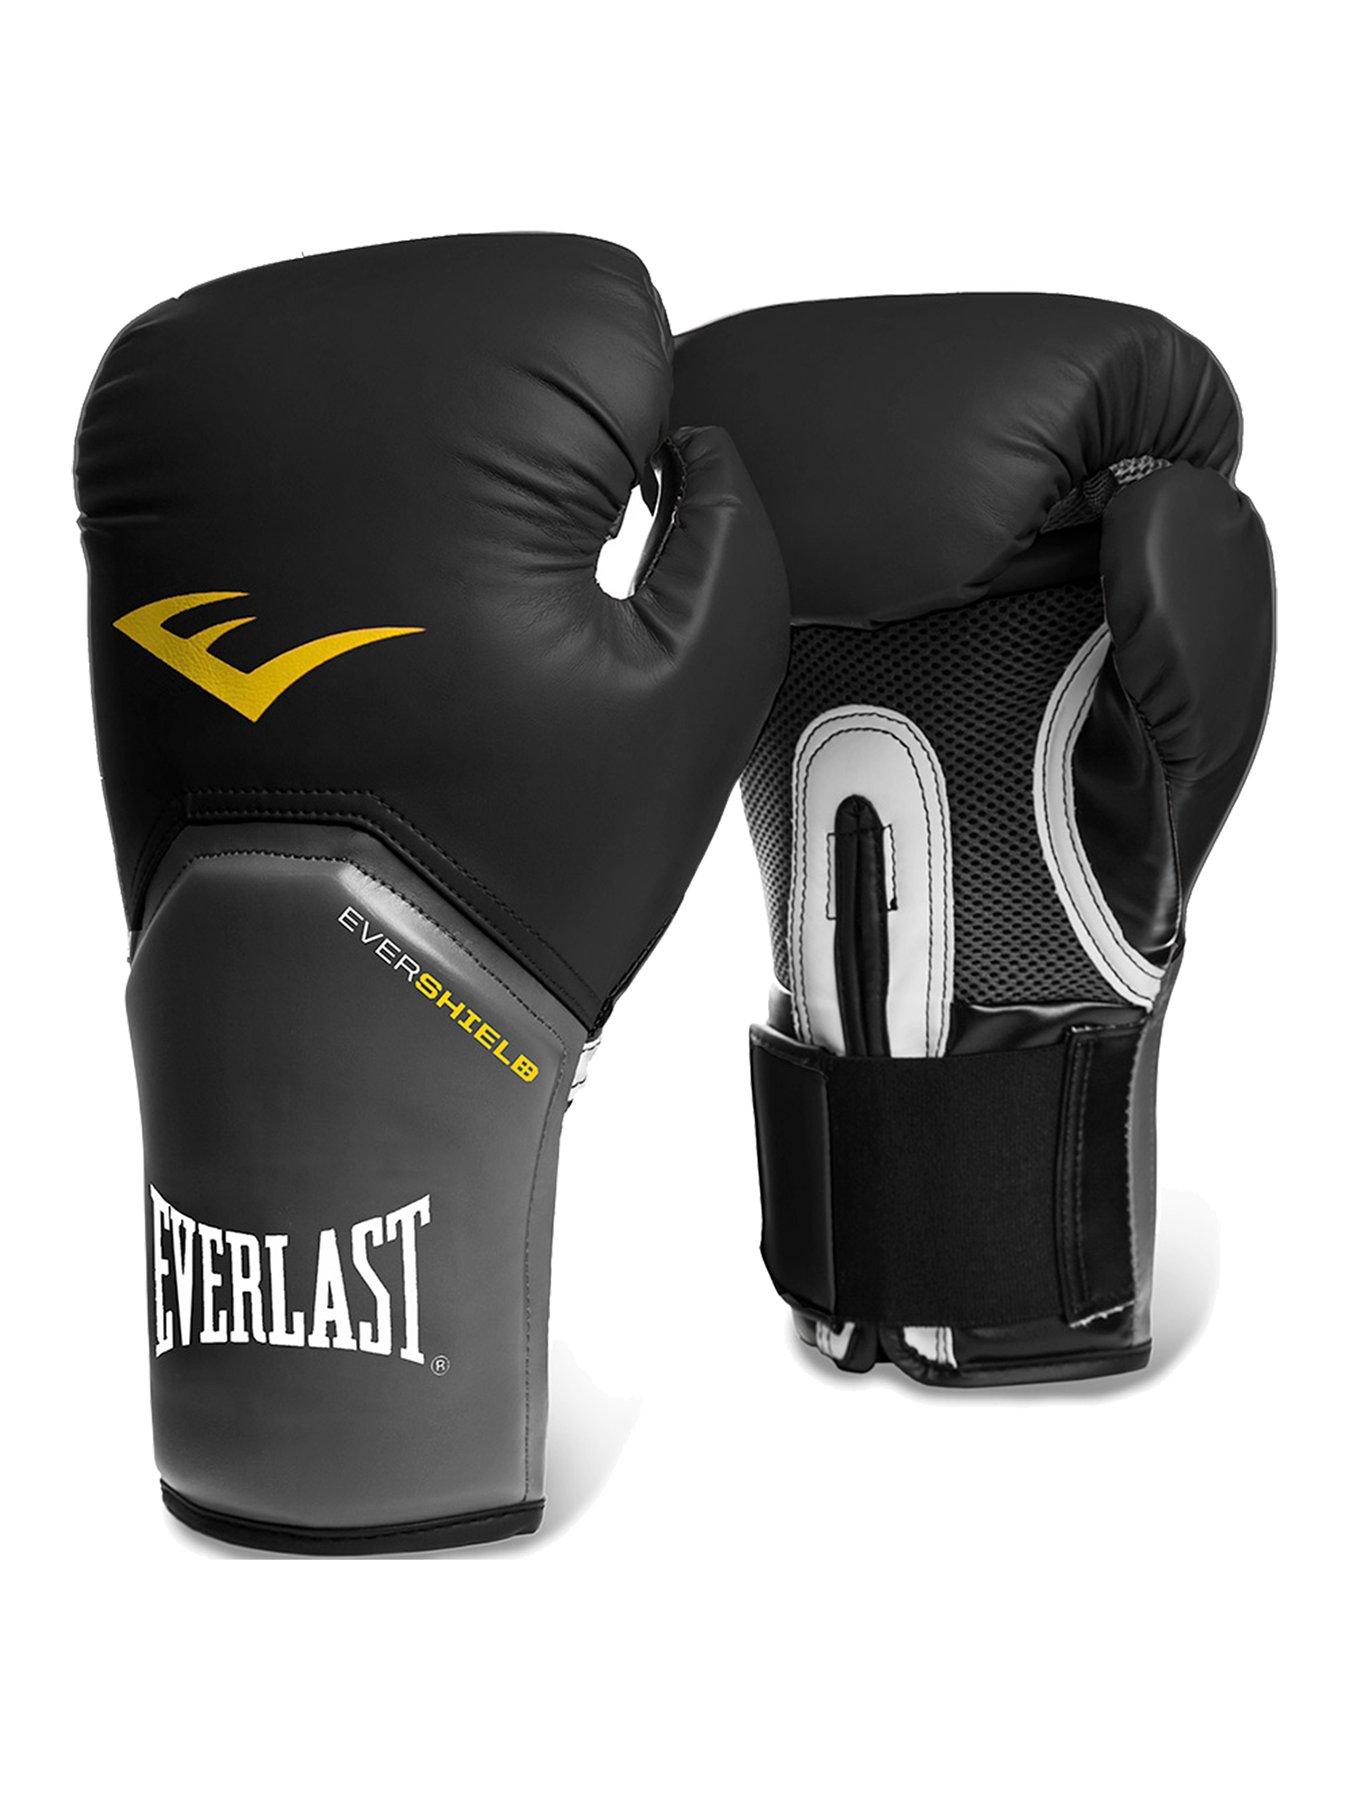 Everlast Boxing 16oz Pro Style Training Glove Black very.co.uk